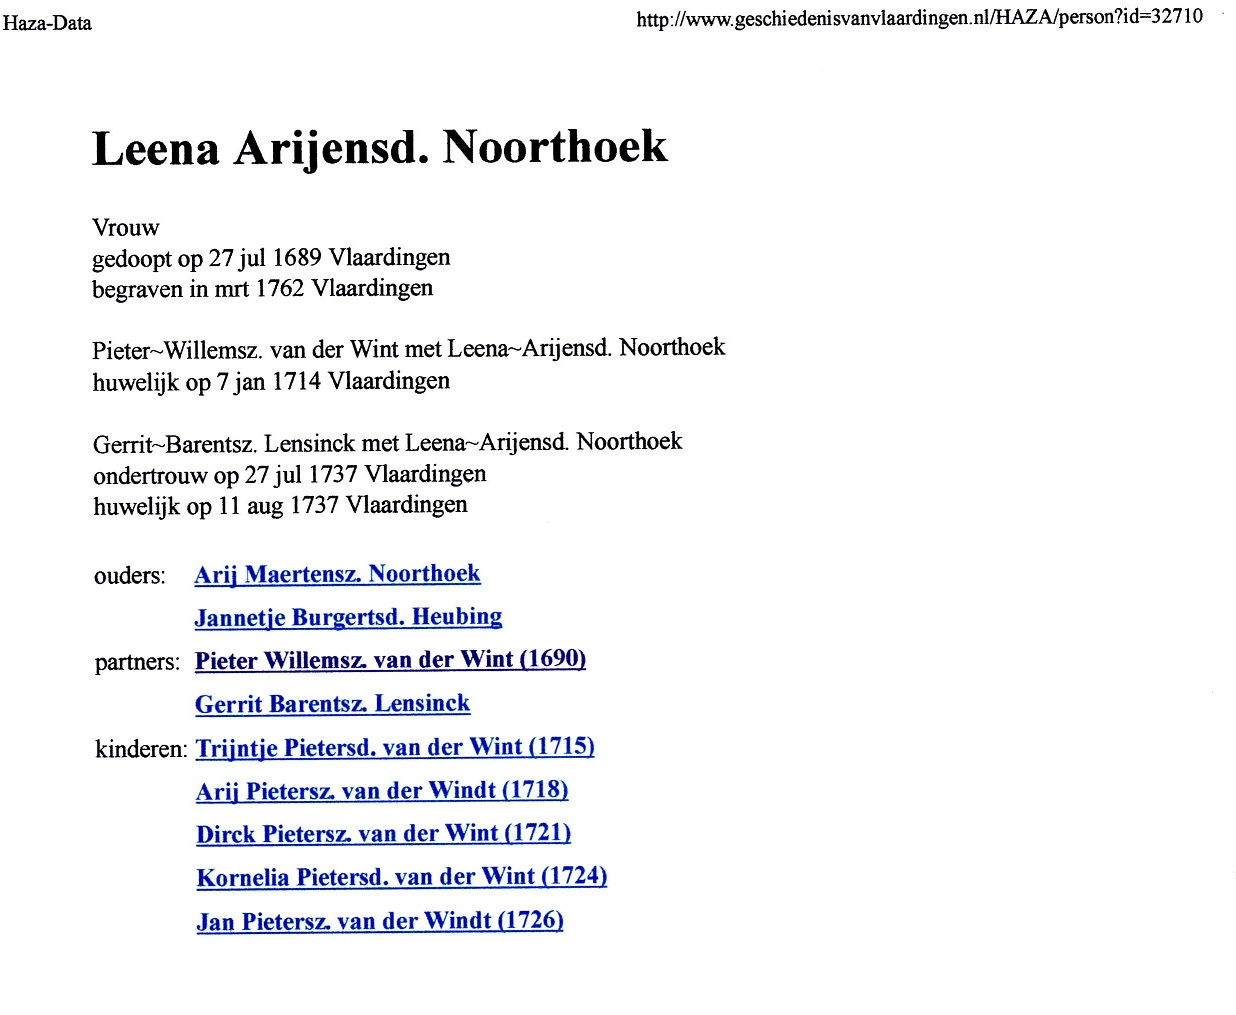 1689-07-27 Leena Arijensd Noorthoek